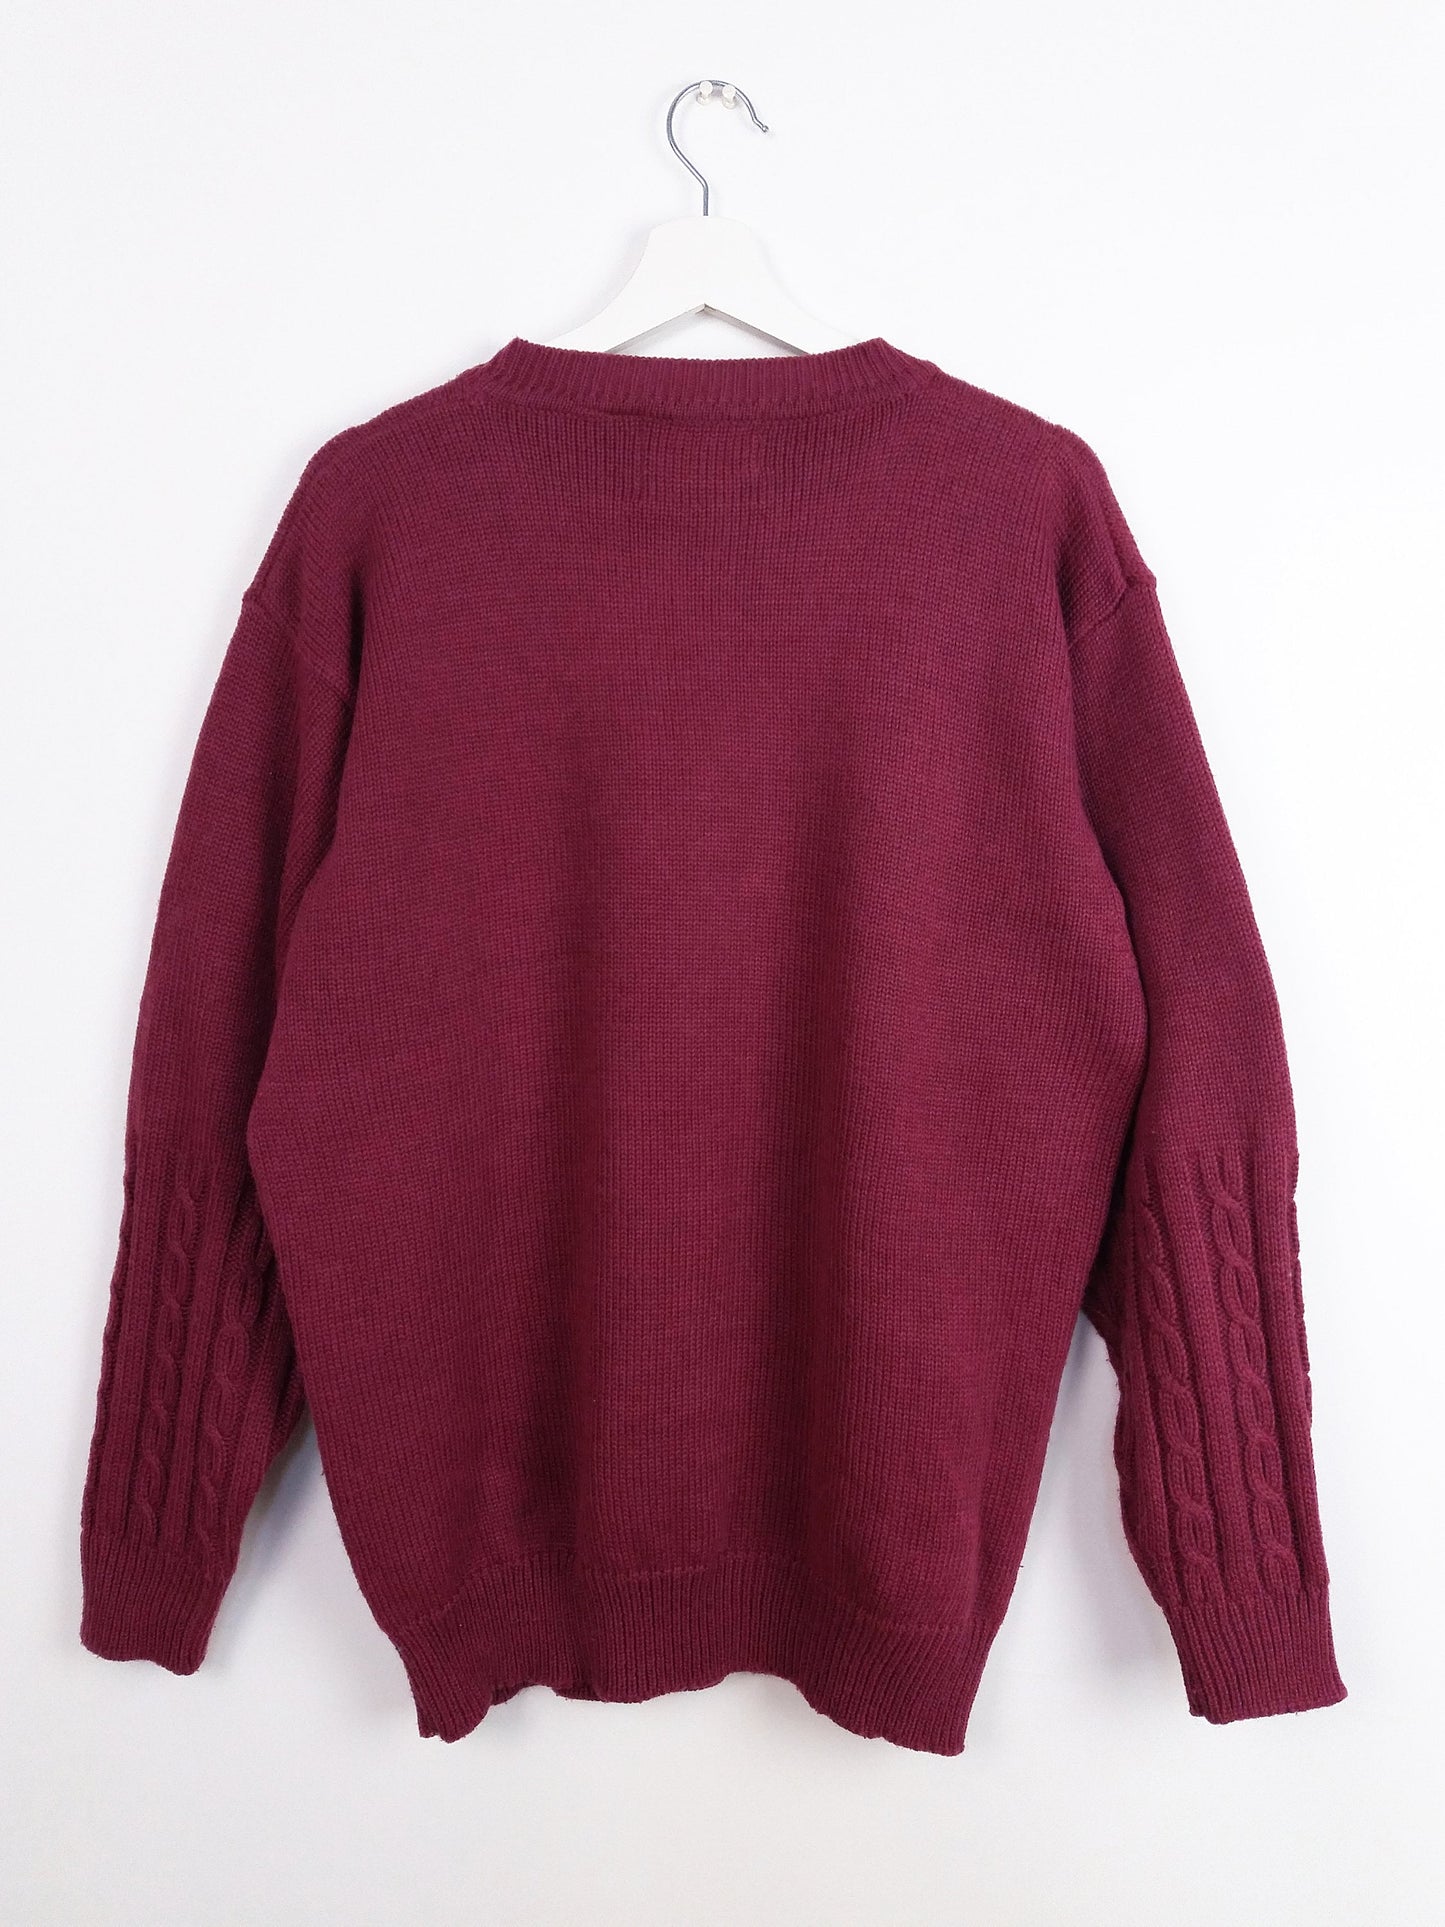 TONIO RIZZI Unisex Retro Novelty Sweater - size L